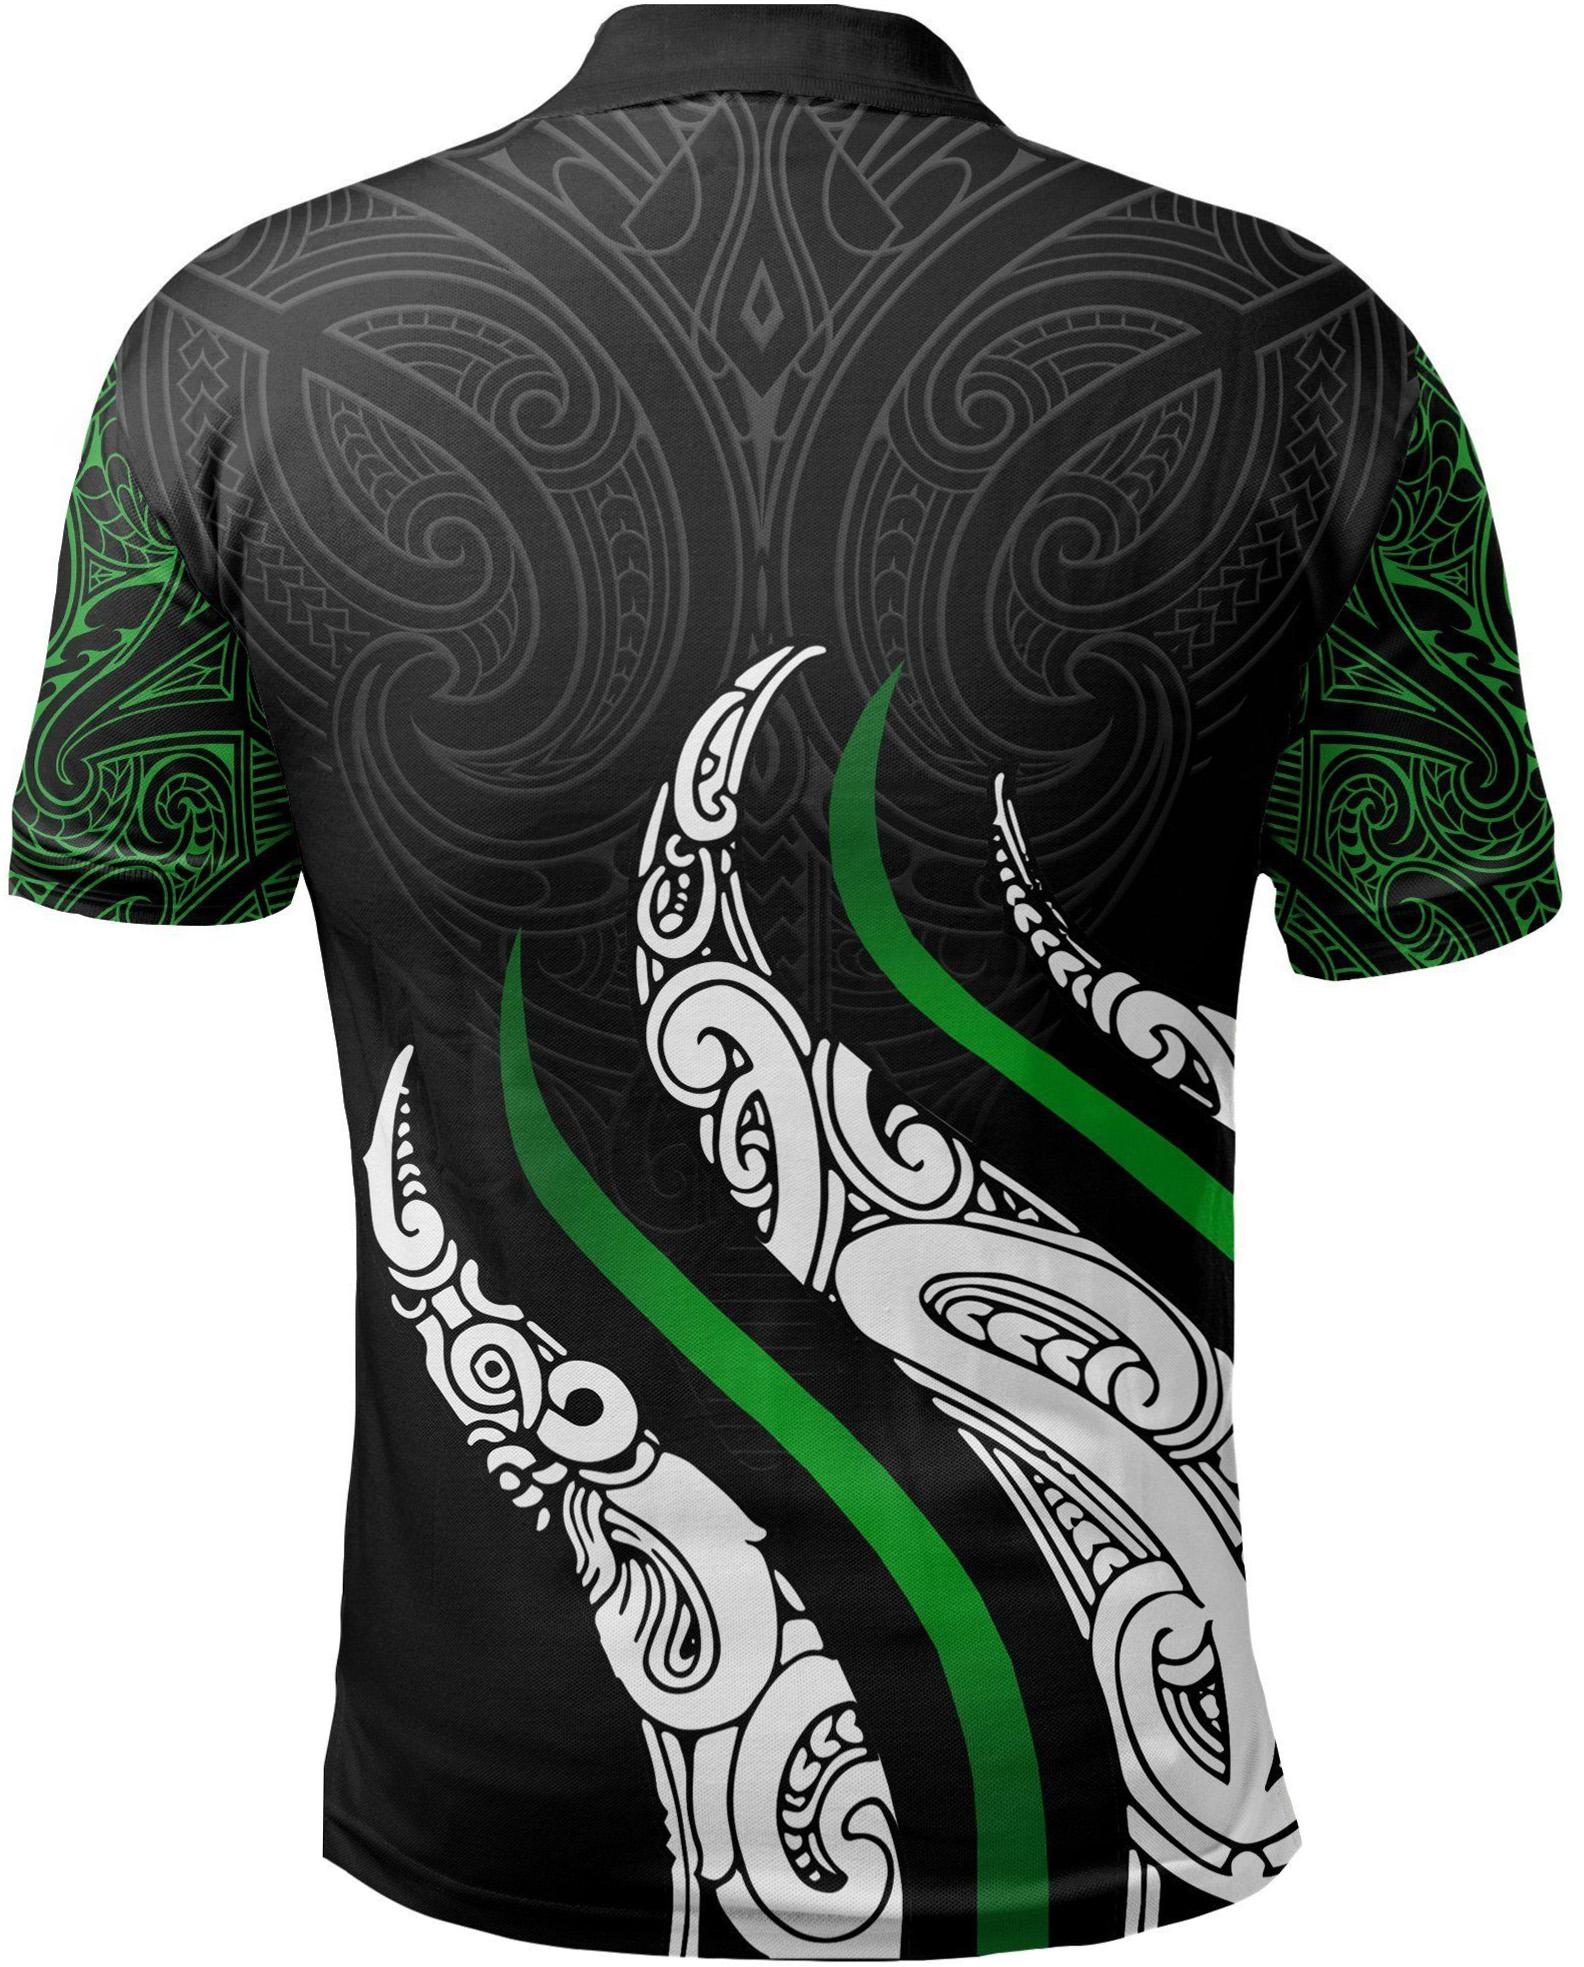 Aotearoa New Zealand 2020 Mens Football Polo Shirt